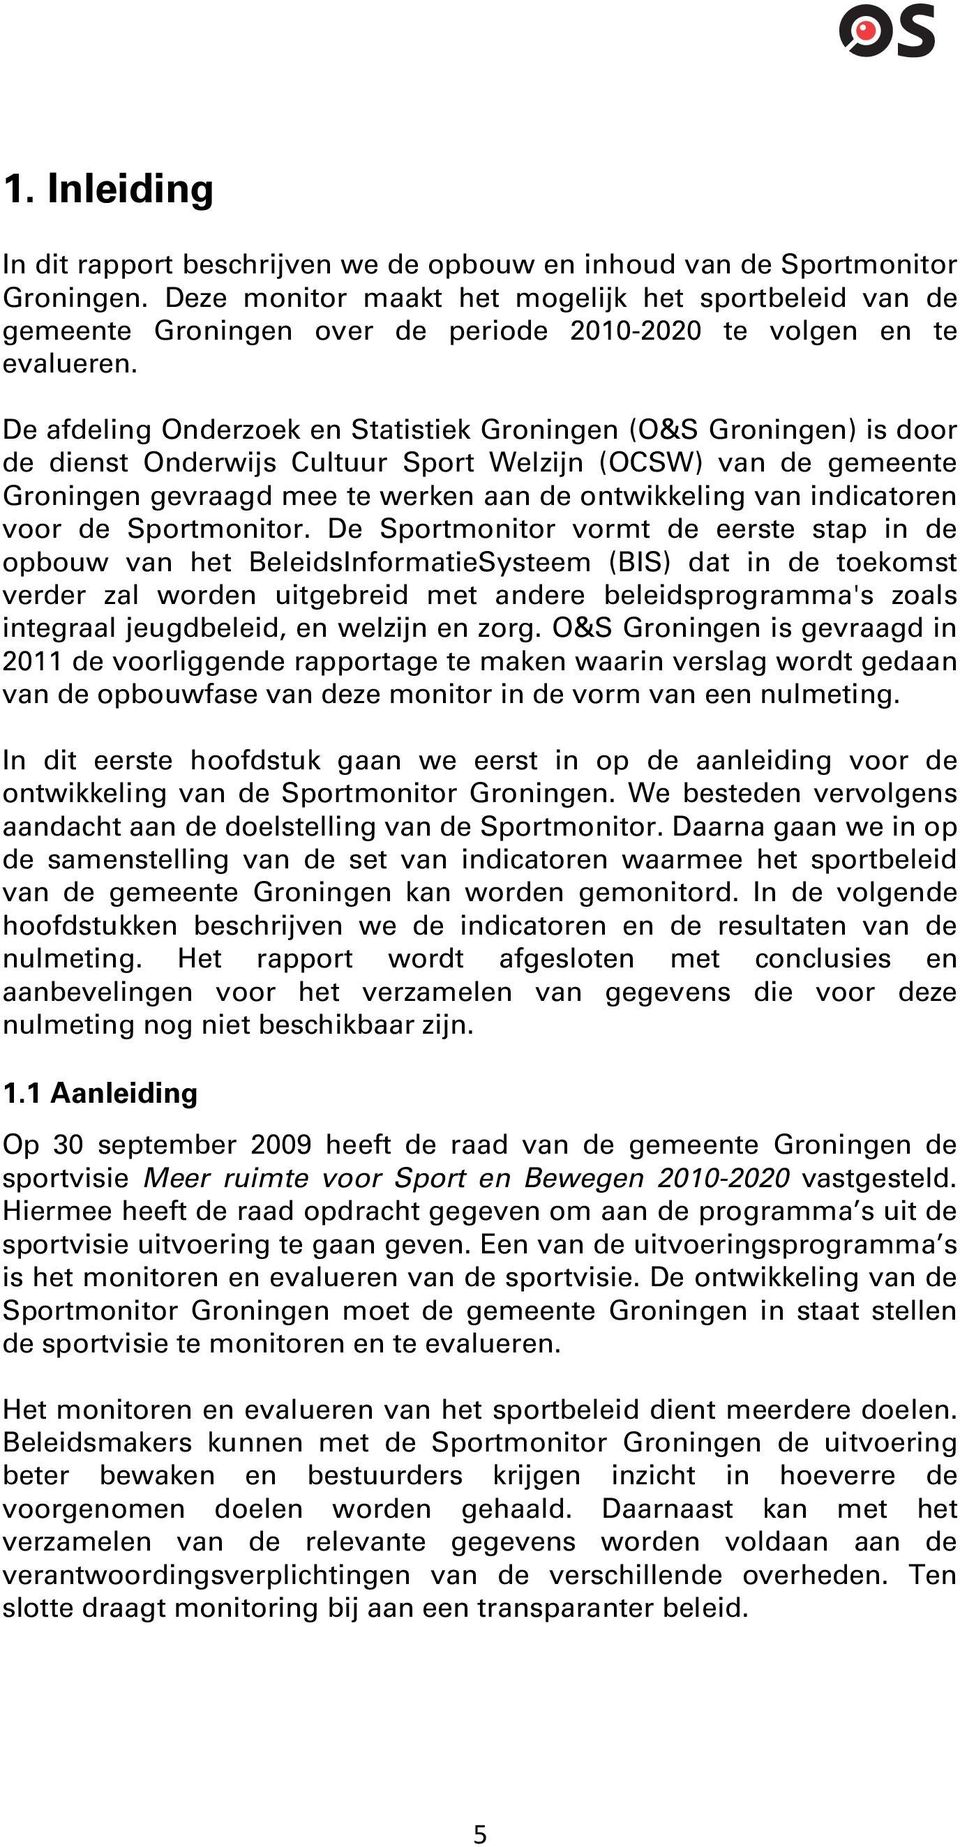 De afdeling Onderzoek en Statistiek Groningen (O&S Groningen) is door de dienst Onderwijs Cultuur Sport Welzijn (OCSW) van de gemeente Groningen gevraagd mee te werken aan de ontwikkeling van